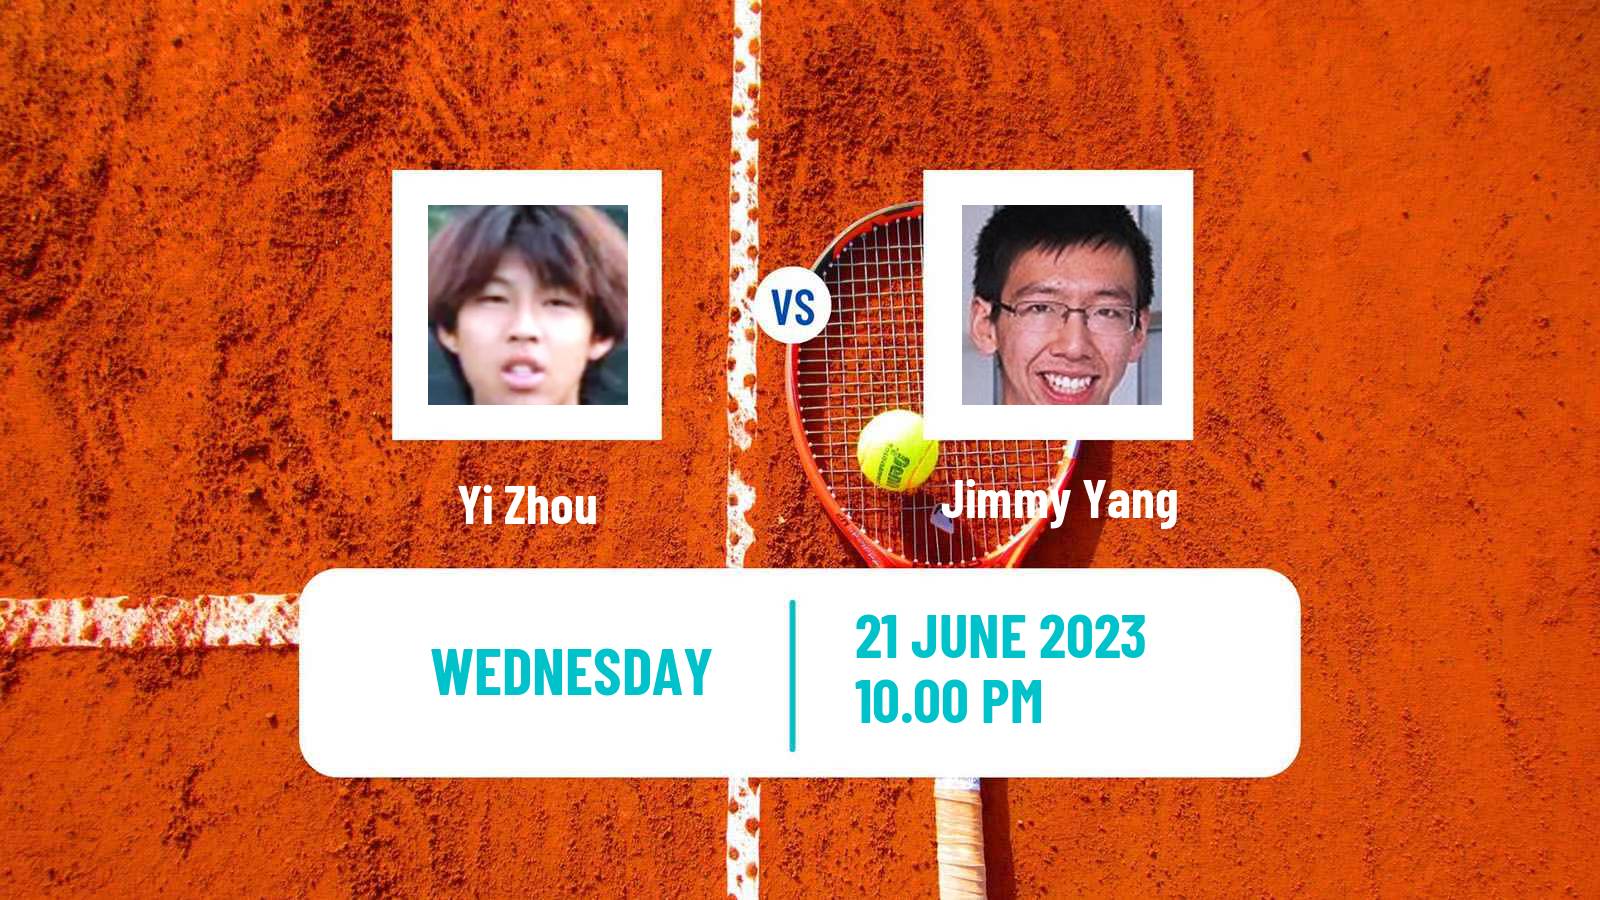 Tennis ITF M15 Tianjin 2 Men Yi Zhou - Jimmy Yang